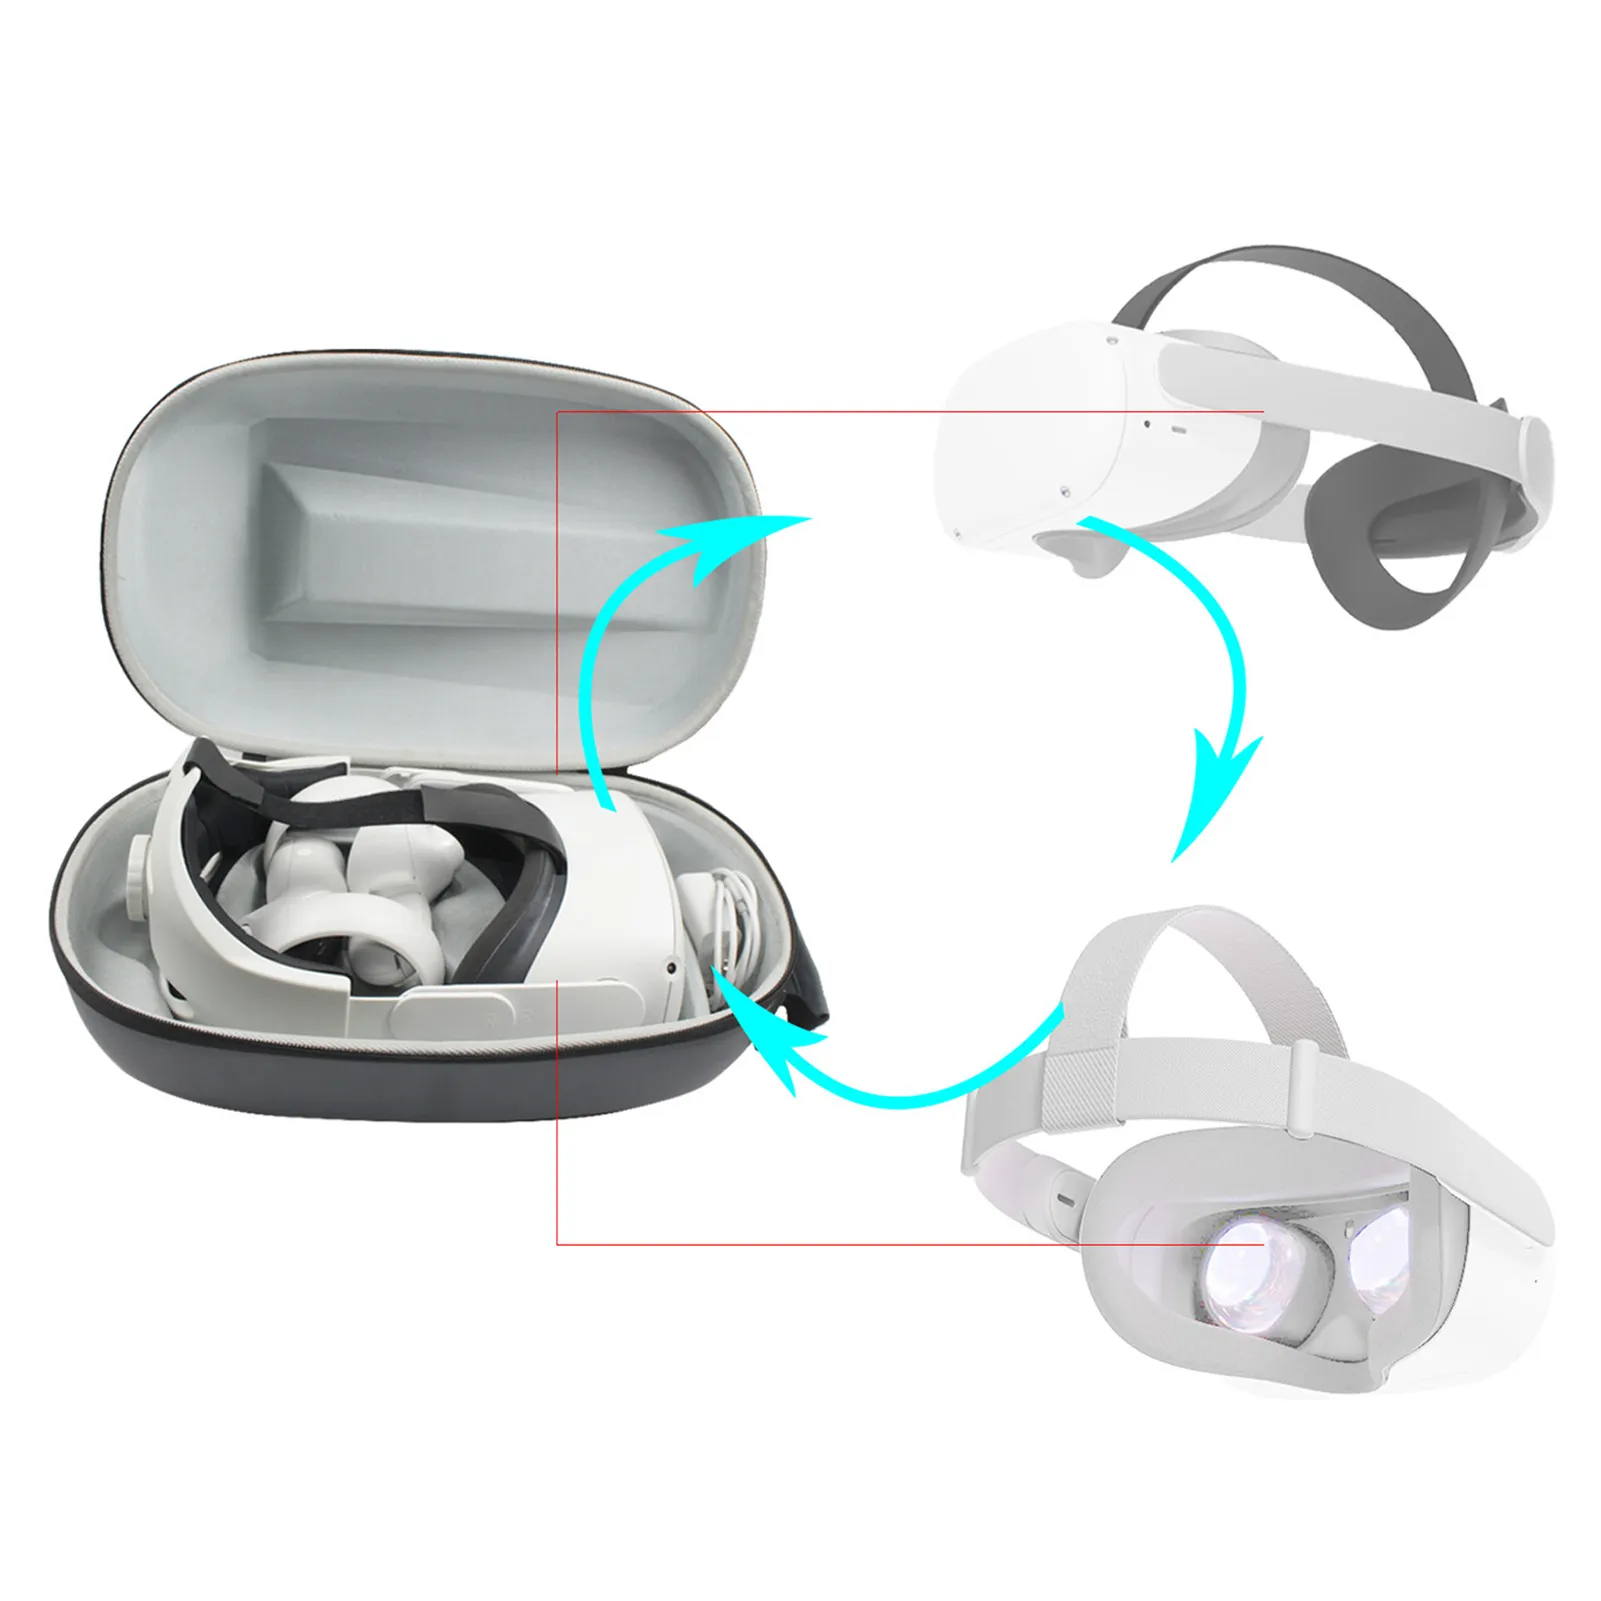 Sac de rangement portable accessoires VR pour Oculus Quest 2 Vr casque mallette de voyage EVA boîte rigide pour OculusQuest 2 Handbag7827713